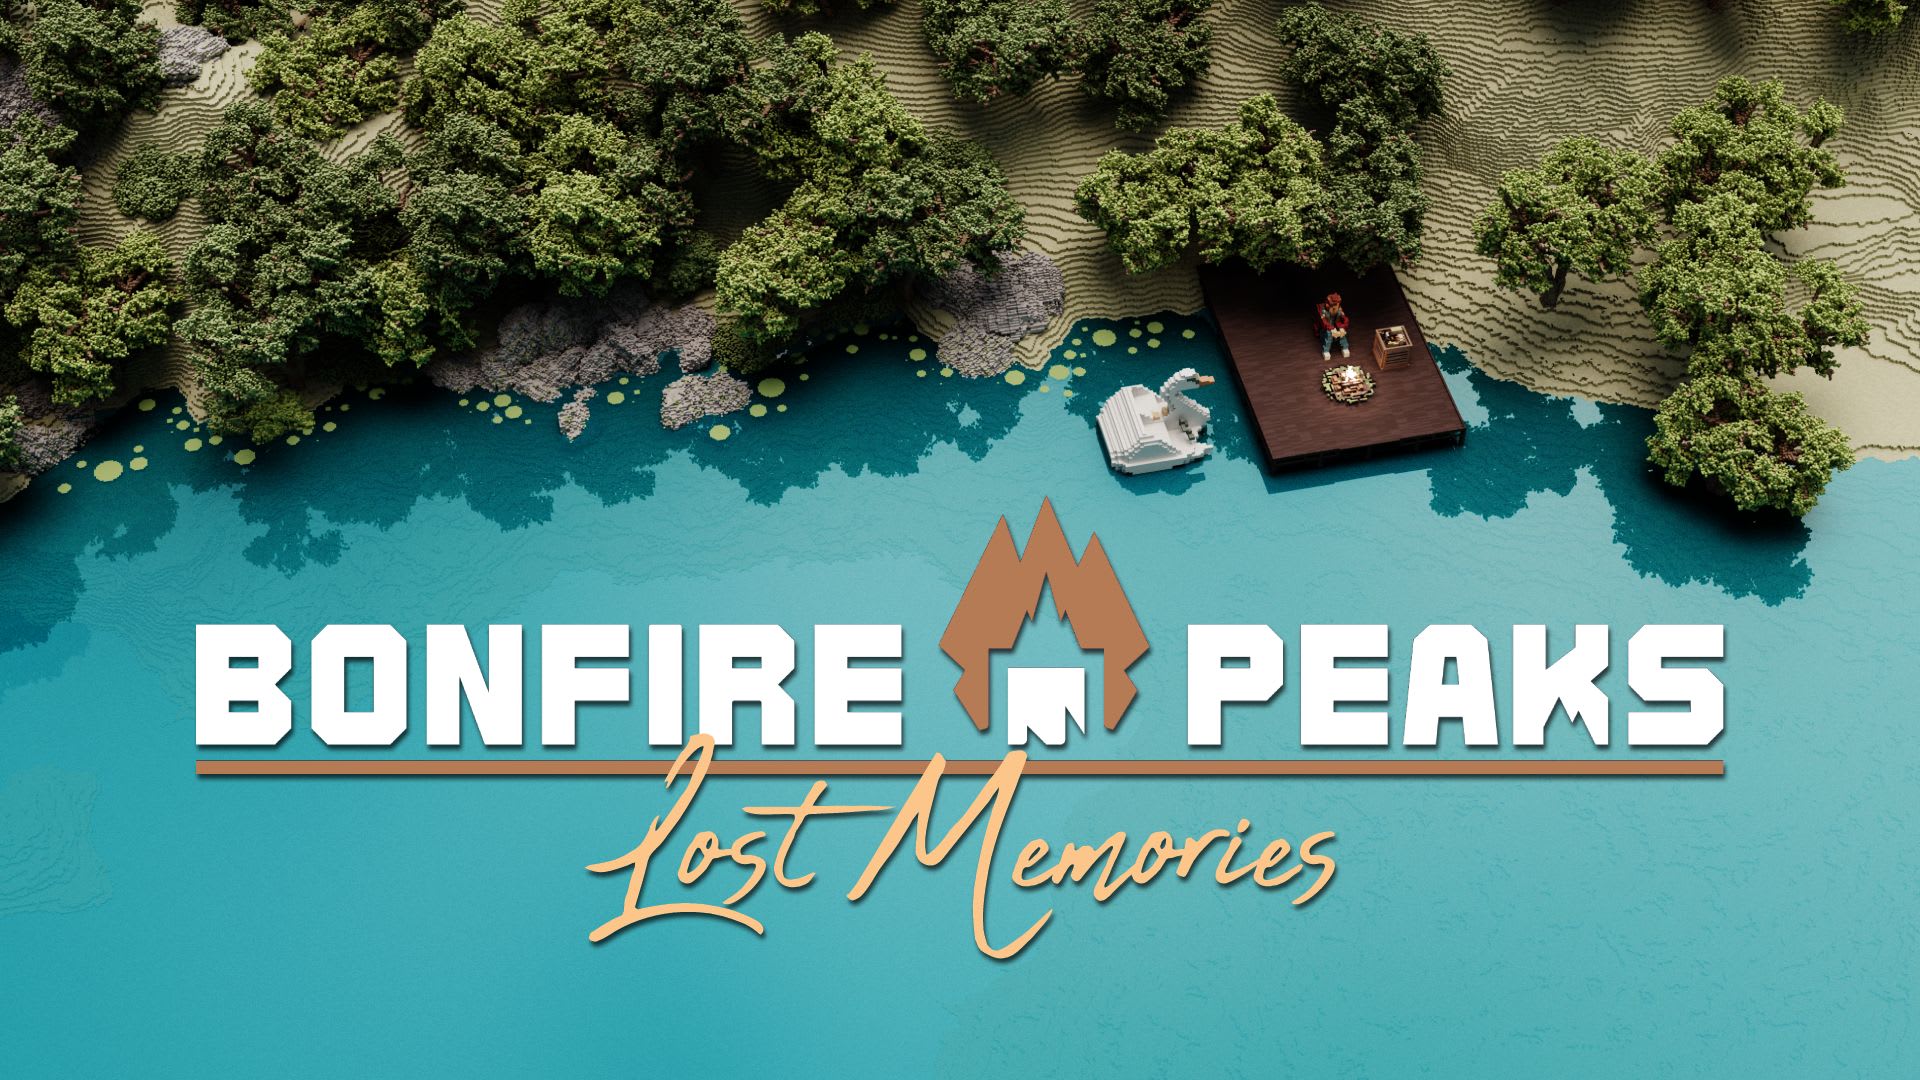 Bonfire Peaks Lost Memories